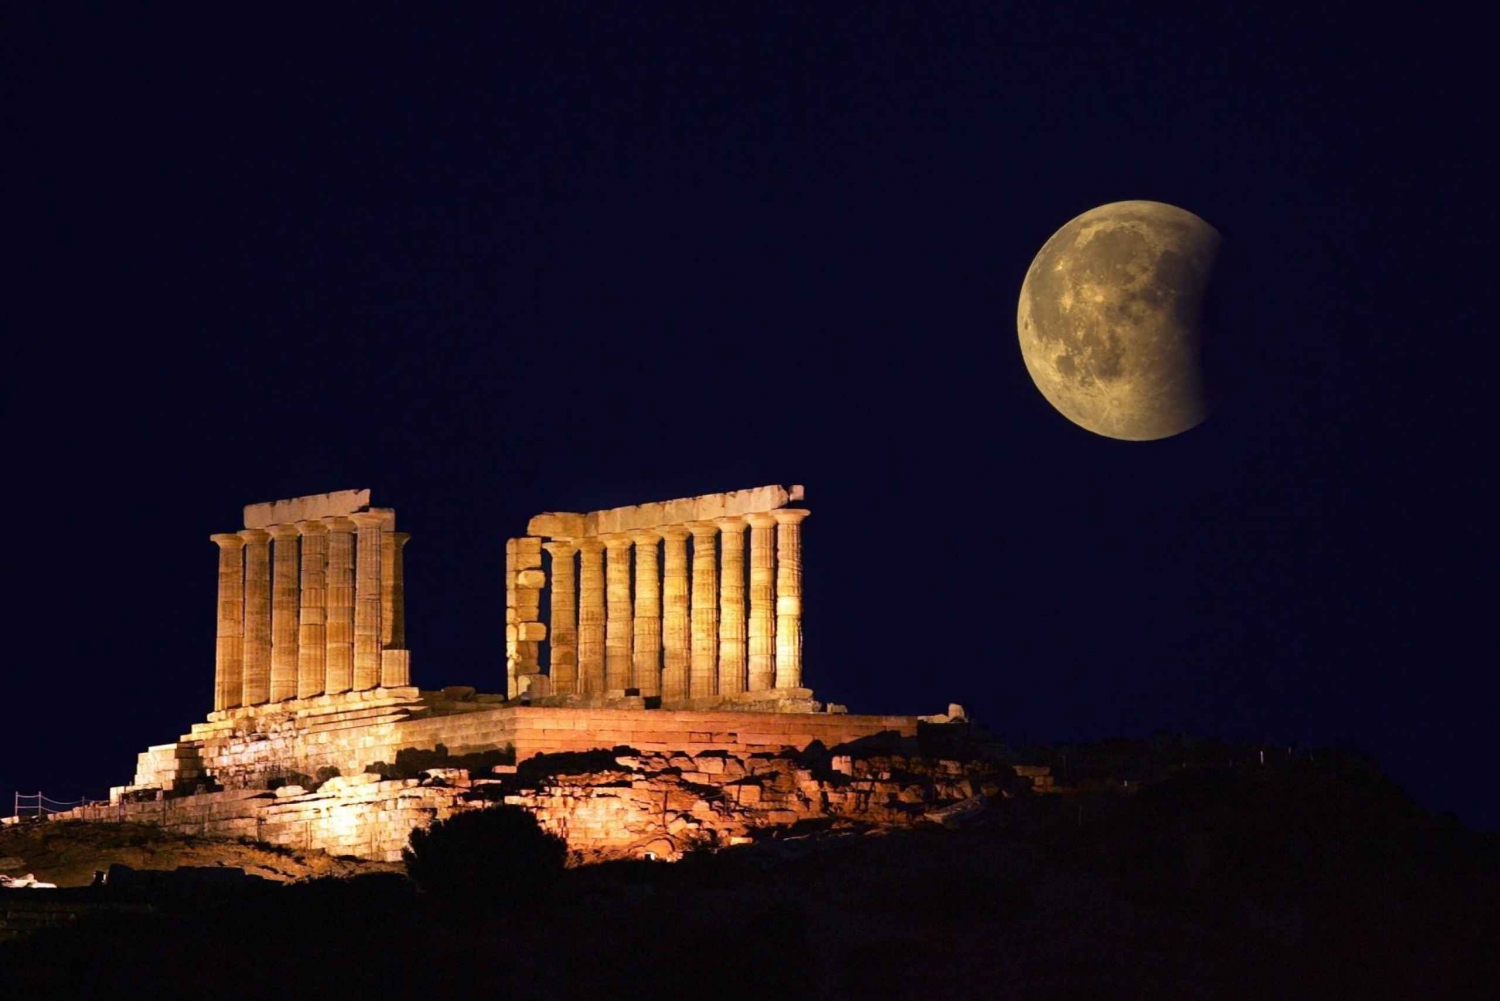 Aten till Sounio: Utforska Poseidons tempel (4 timmar)